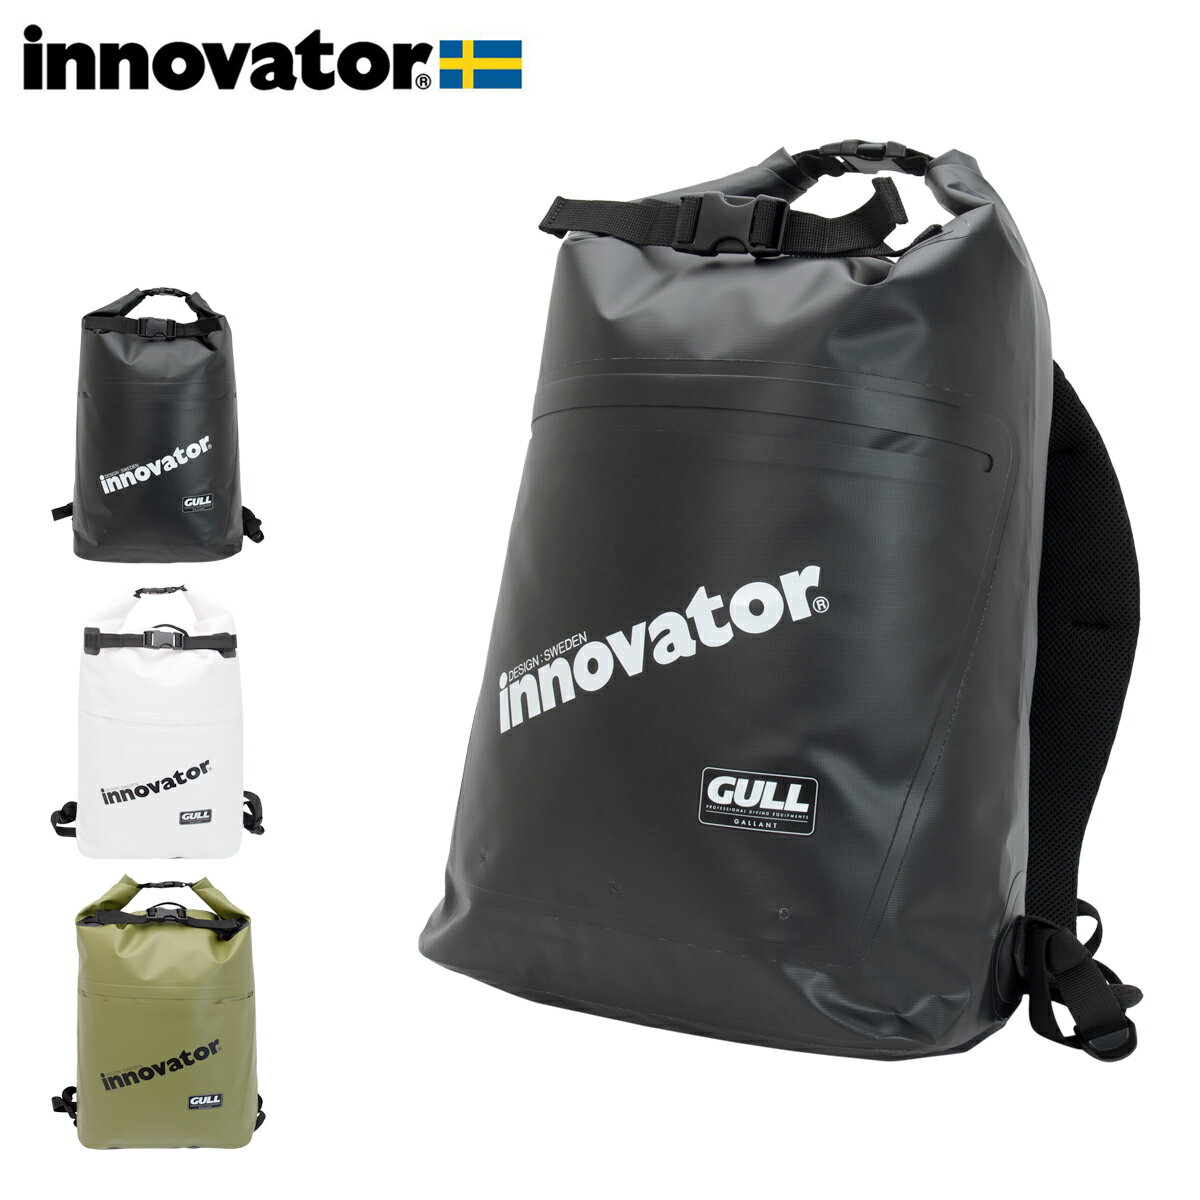 イノベーター リュック ウォータープロテクト GI7144 innovator カジュアルバッグ アウトドアバッグ ターポリン素材 DL10